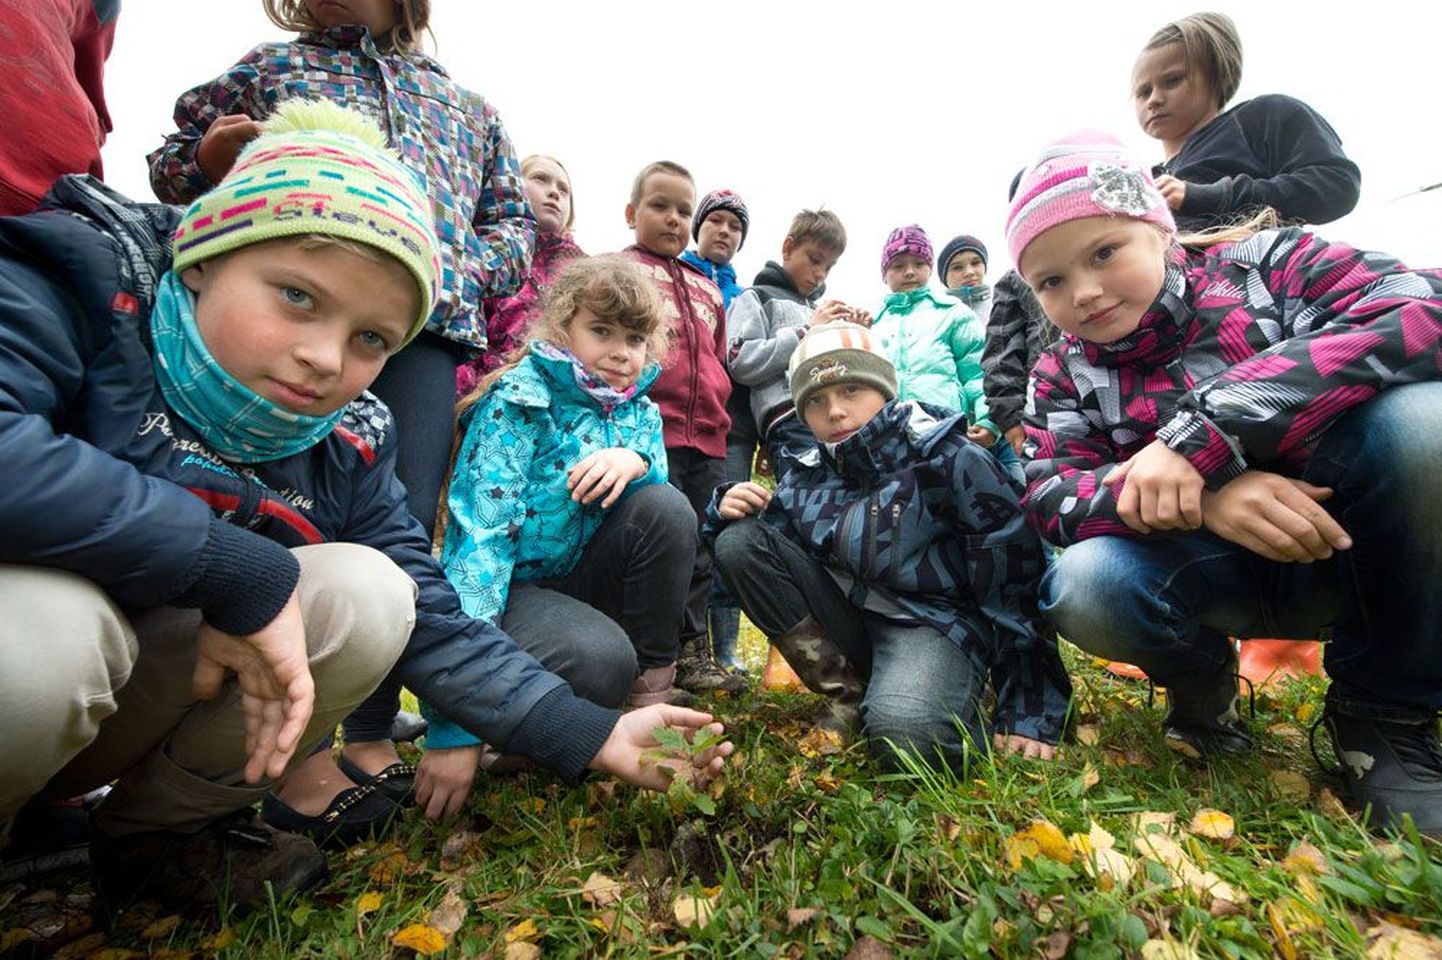 Kiviõli 1. keskkooli lapsed istutasid aasta tagasi esimesed tammetõrud, millest on kasvanud 16 puud, mis on nii pisikesed, et 9-aastaste laste kõrval oleks neid keeruline mõõta, mistõttu kükitasid Siim Vernik, Mirtel Põdra, Dima Smirnov ja Viktoria Oproško tammede juurde maha. Kui pikaks jõuavad tammed ja lapsed viie aastaga sirguda, kui saja tamme alleed Kiviõlis Eesti Vabariigi 100. sünnipäeval istutama hakatakse?